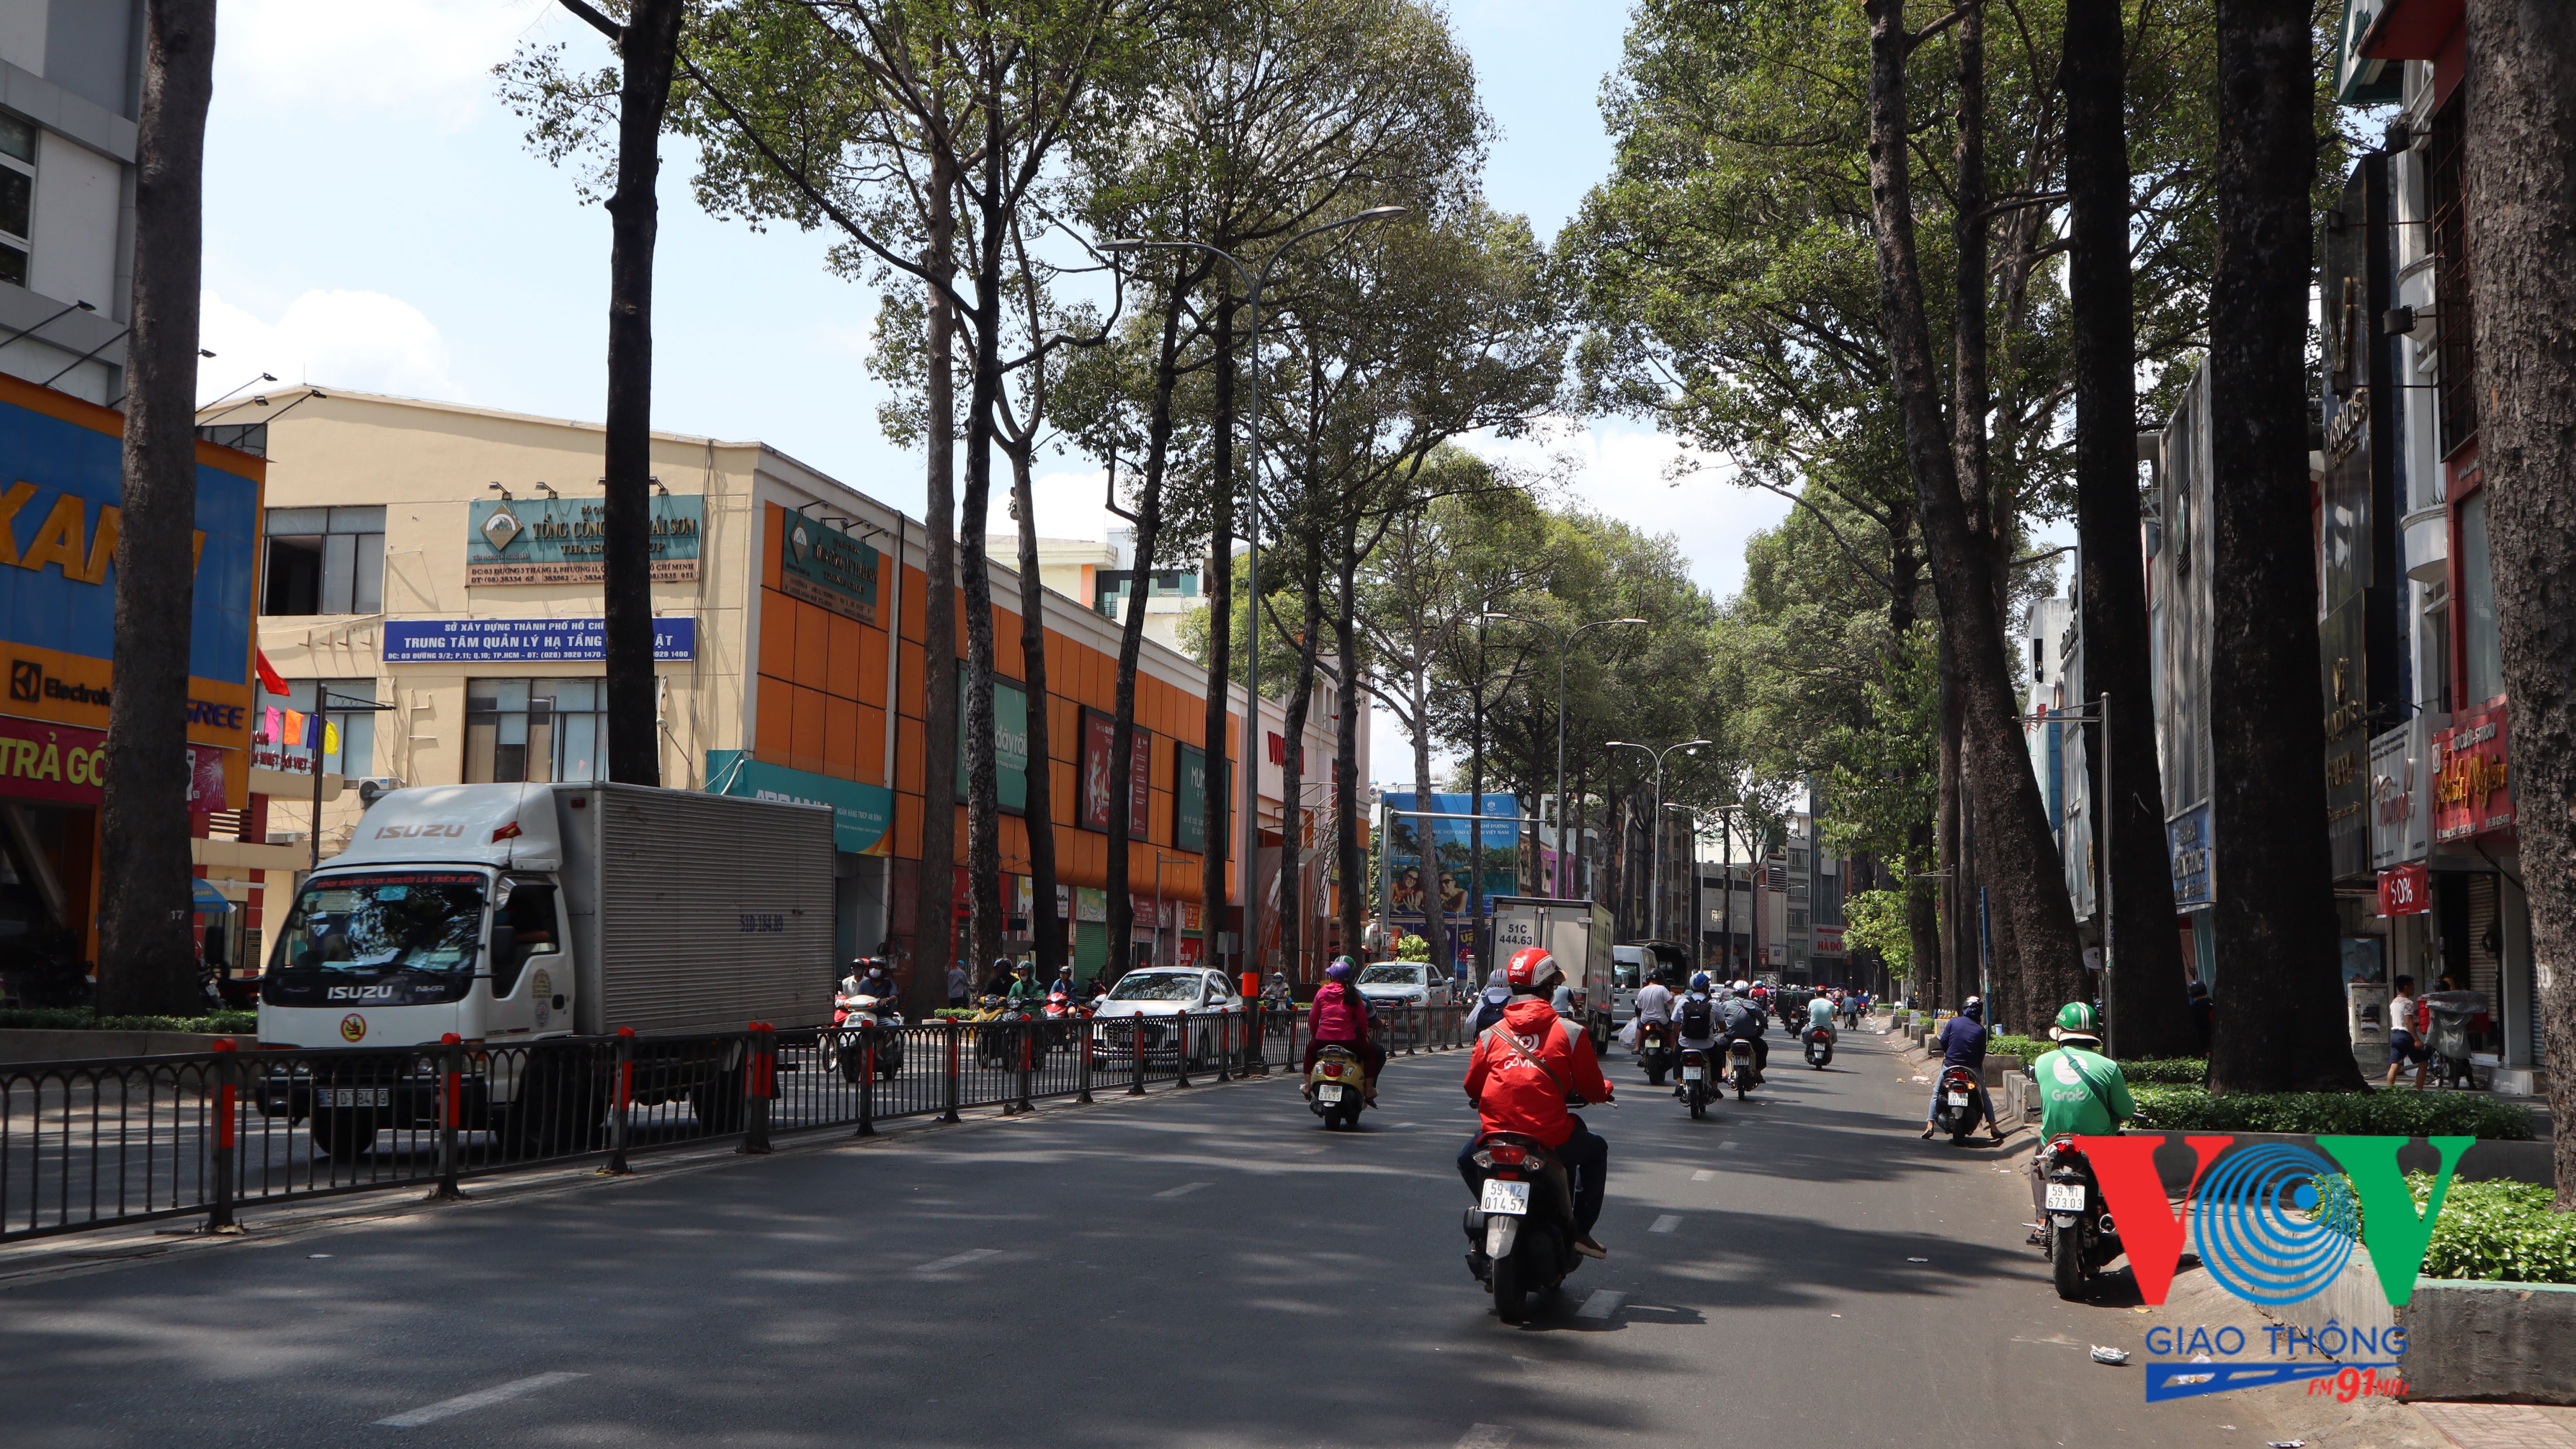 Sáng 1/4, các tuyến đường tại Tp. Hồ Chí Minh khá thông thoáng, phần lớn là xe gắn máy và rất ít xe ô tô